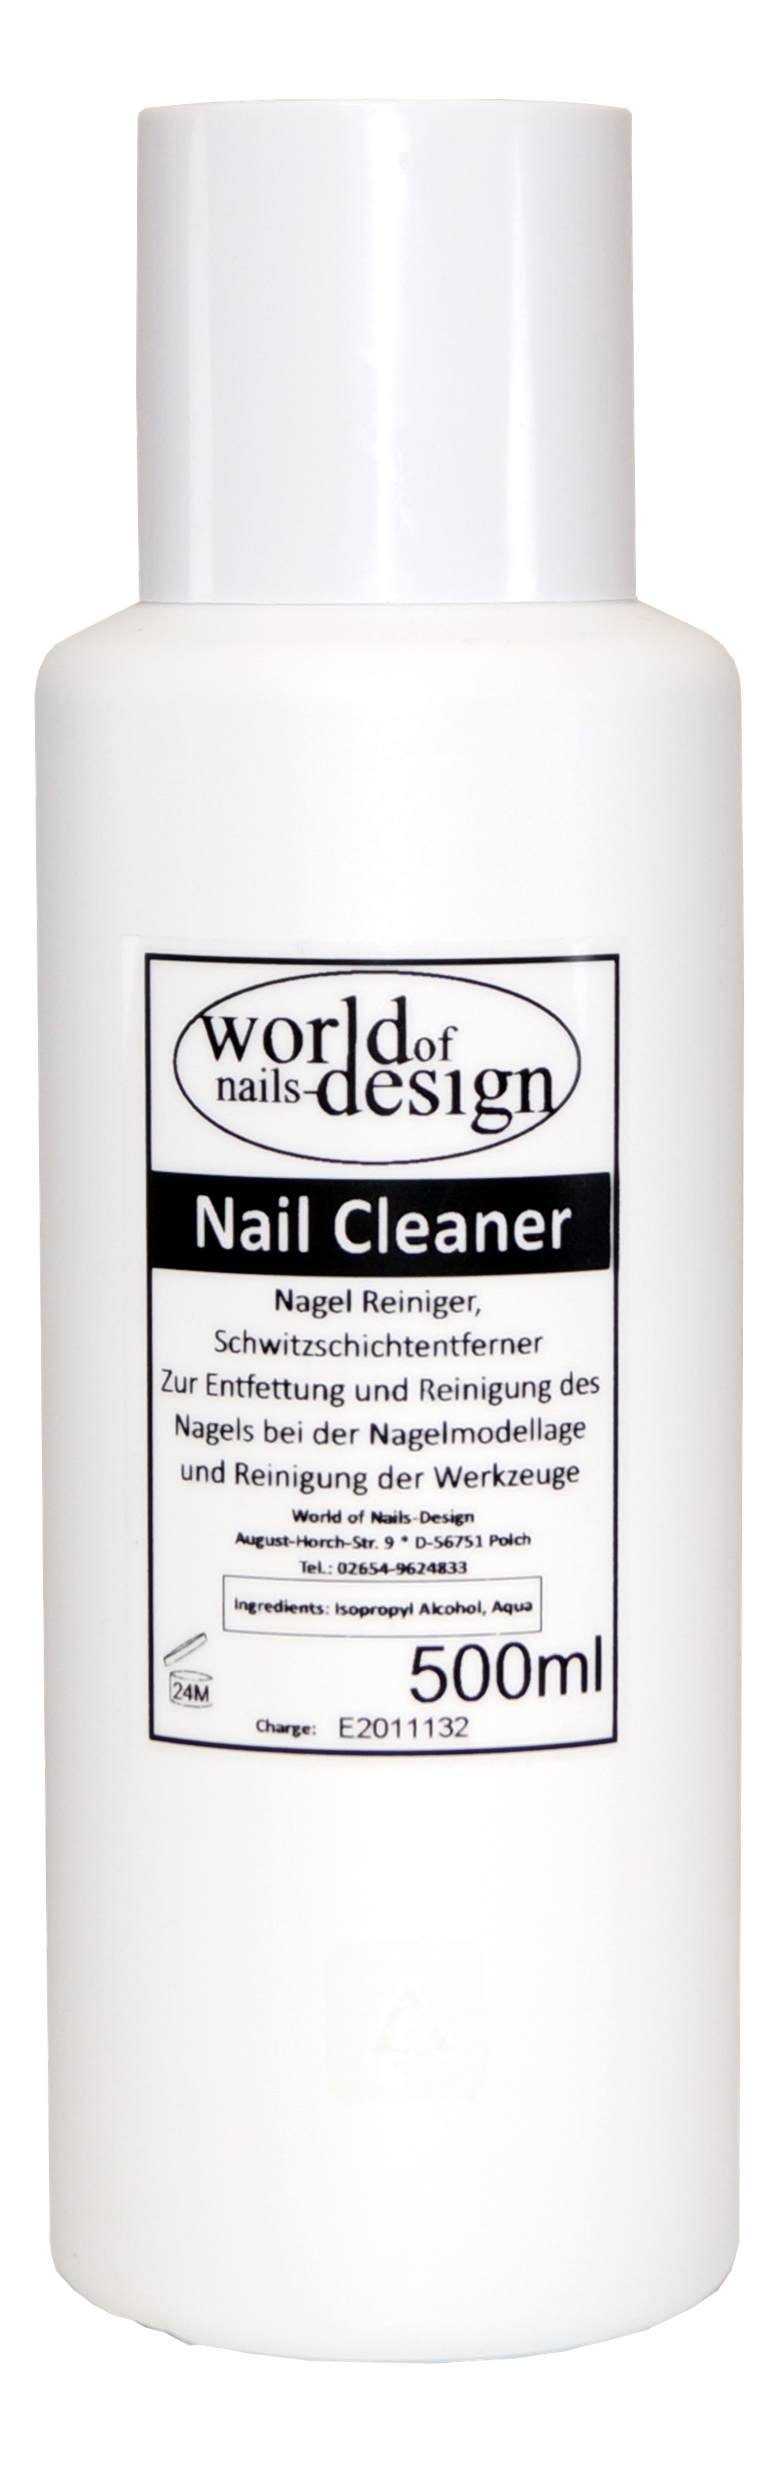 World of Nails-Design Nagellackentferner 500ml Cleaner Für Gelnägel  Nagelreiniger Nail Cleaner | Nagellackentferner